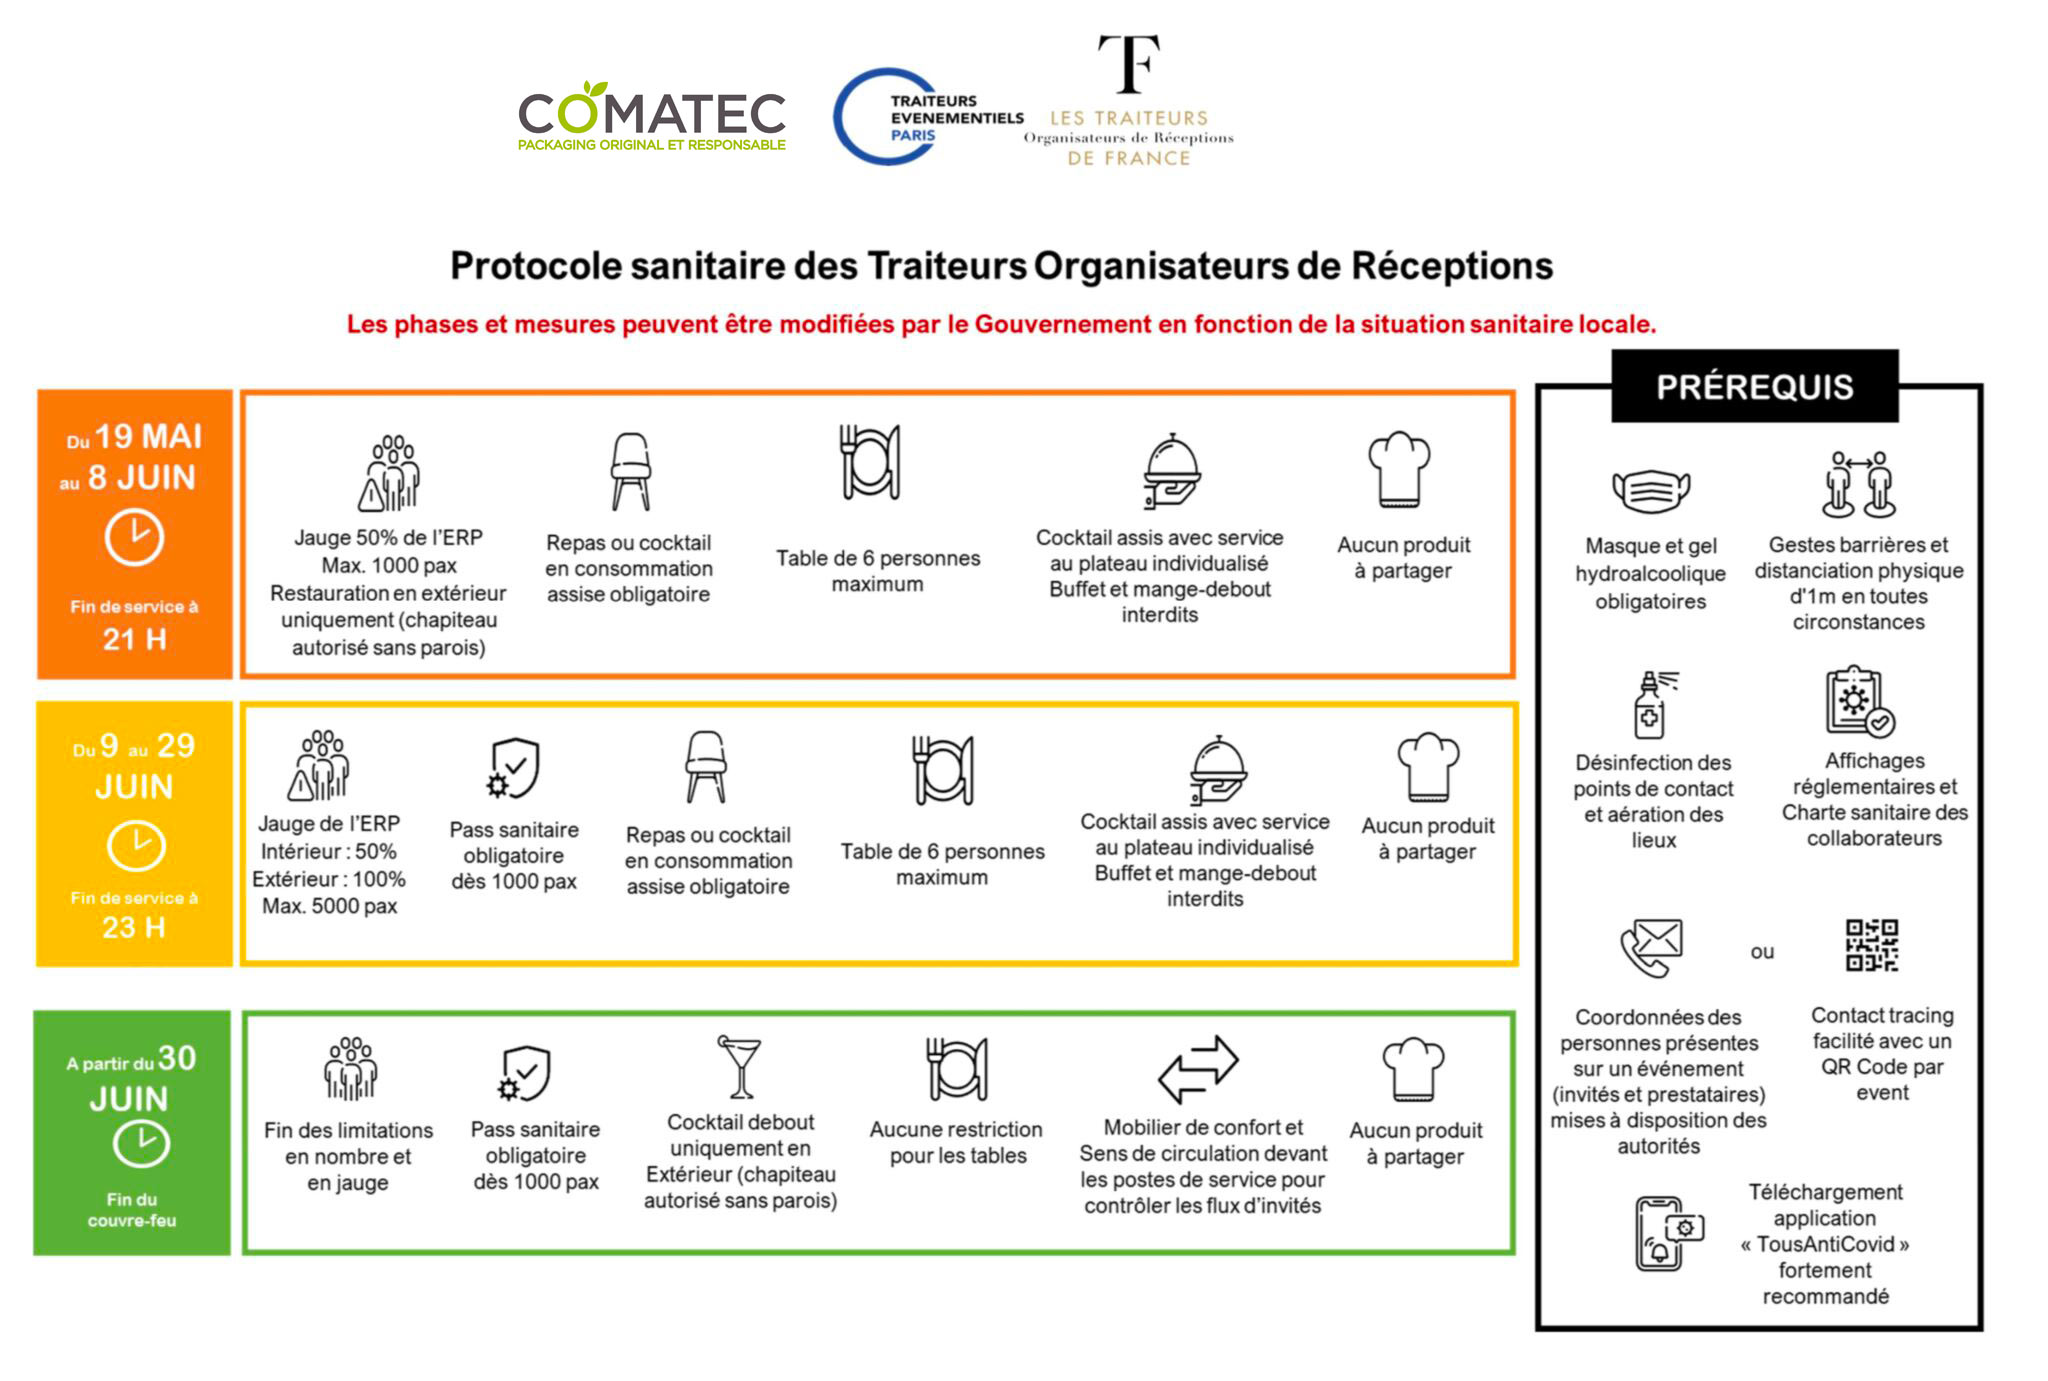 Protocole sanitaire résumé par Comatec